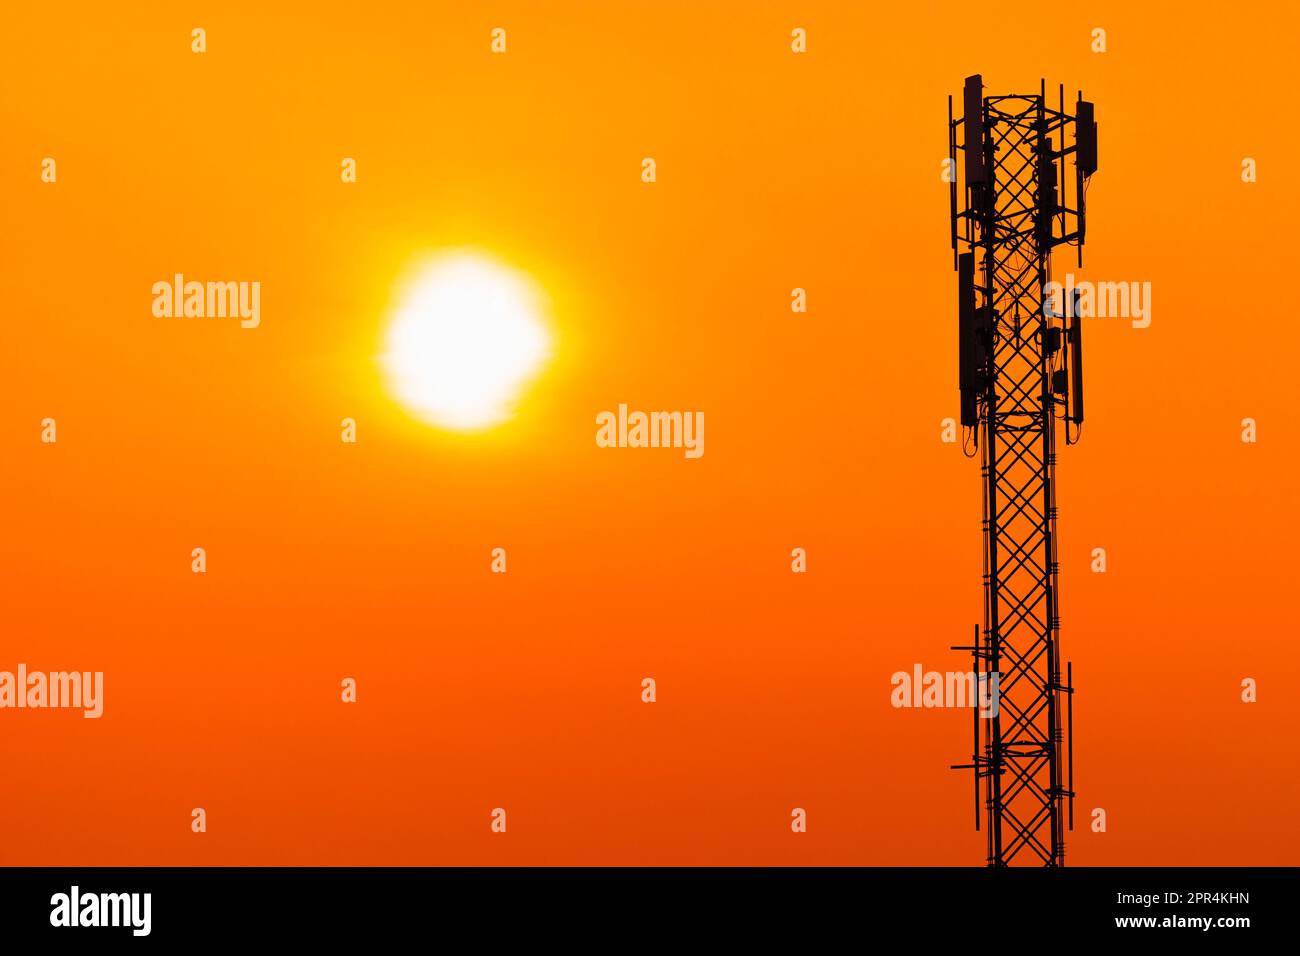 5G-Mobilfunkantenne für digitale Mobilfunkmasten auf klarem Hintergrund mit orangefarbenem Himmel bei Sonnenuntergang. Stockfoto